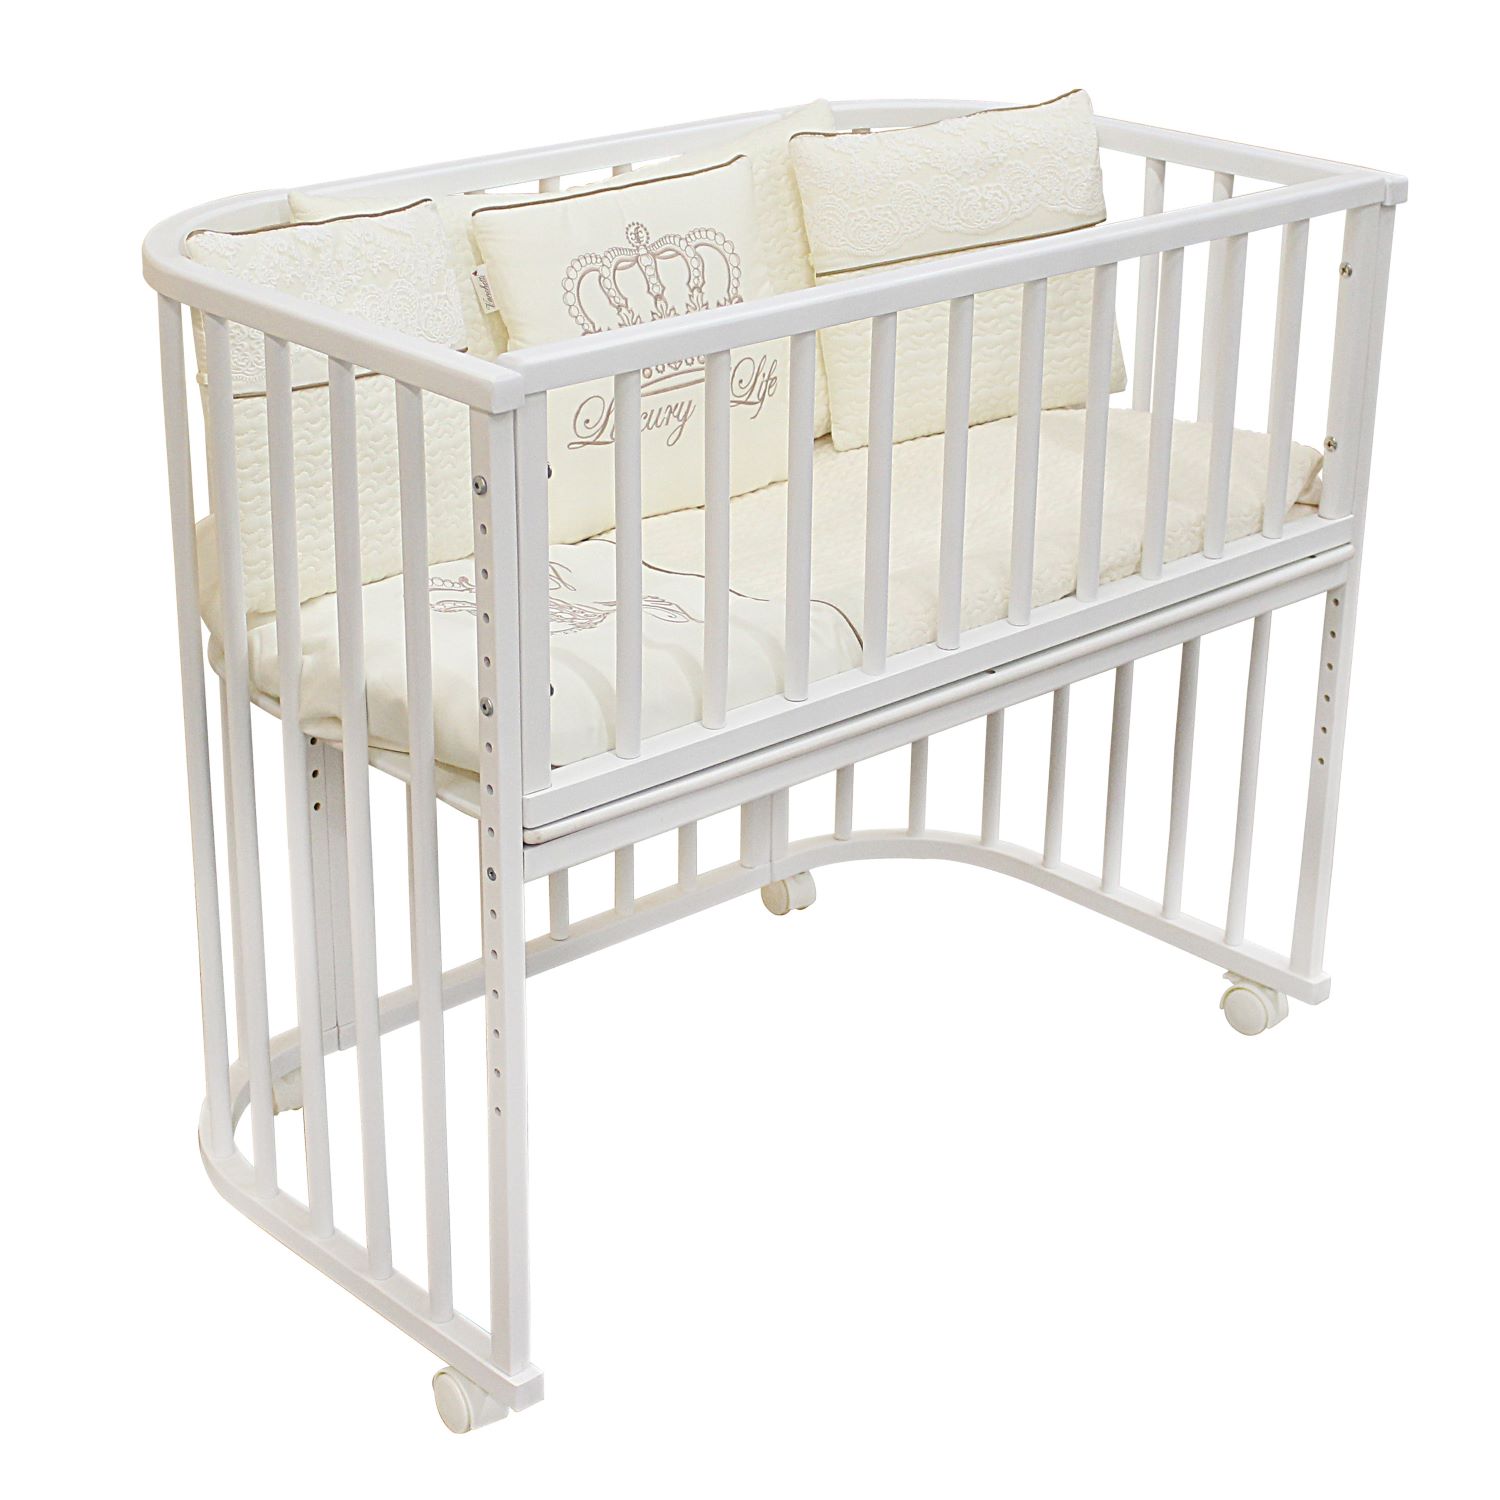 Овальная приставная детская кроватка Азбука Кроваток с матрасом на колесах Dolce, белый